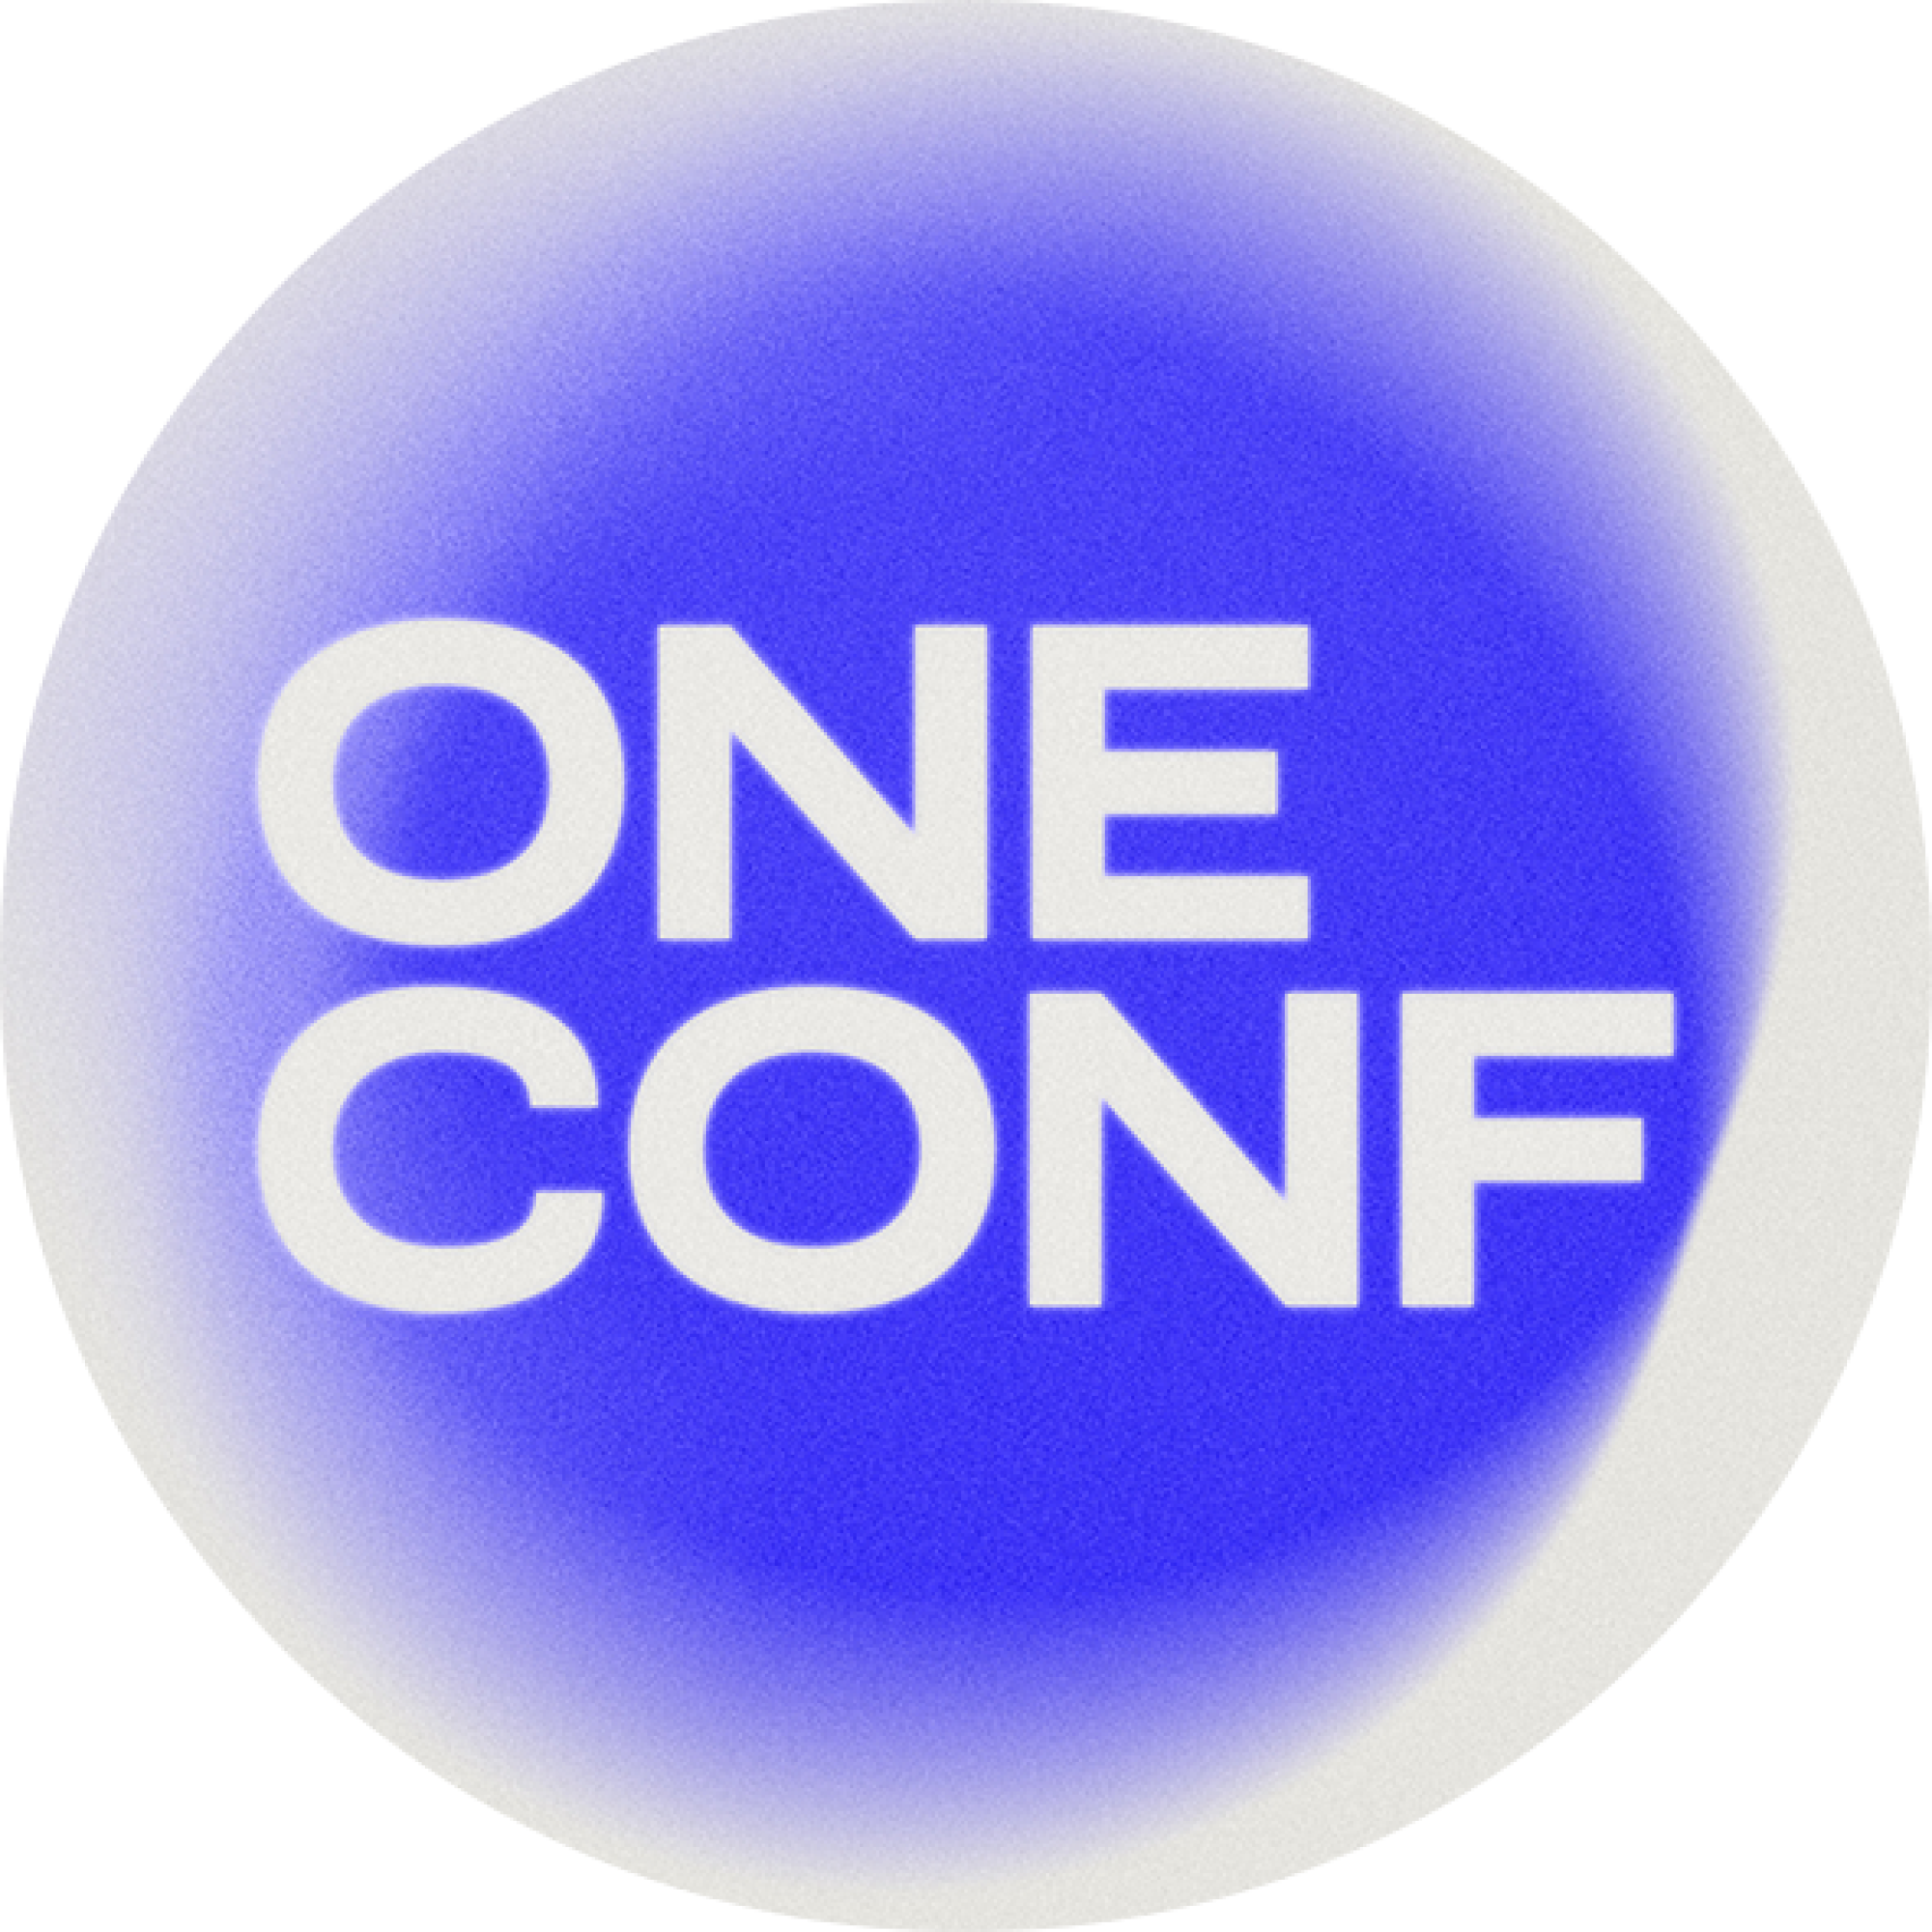 ONE CONF - IKONKA WWW